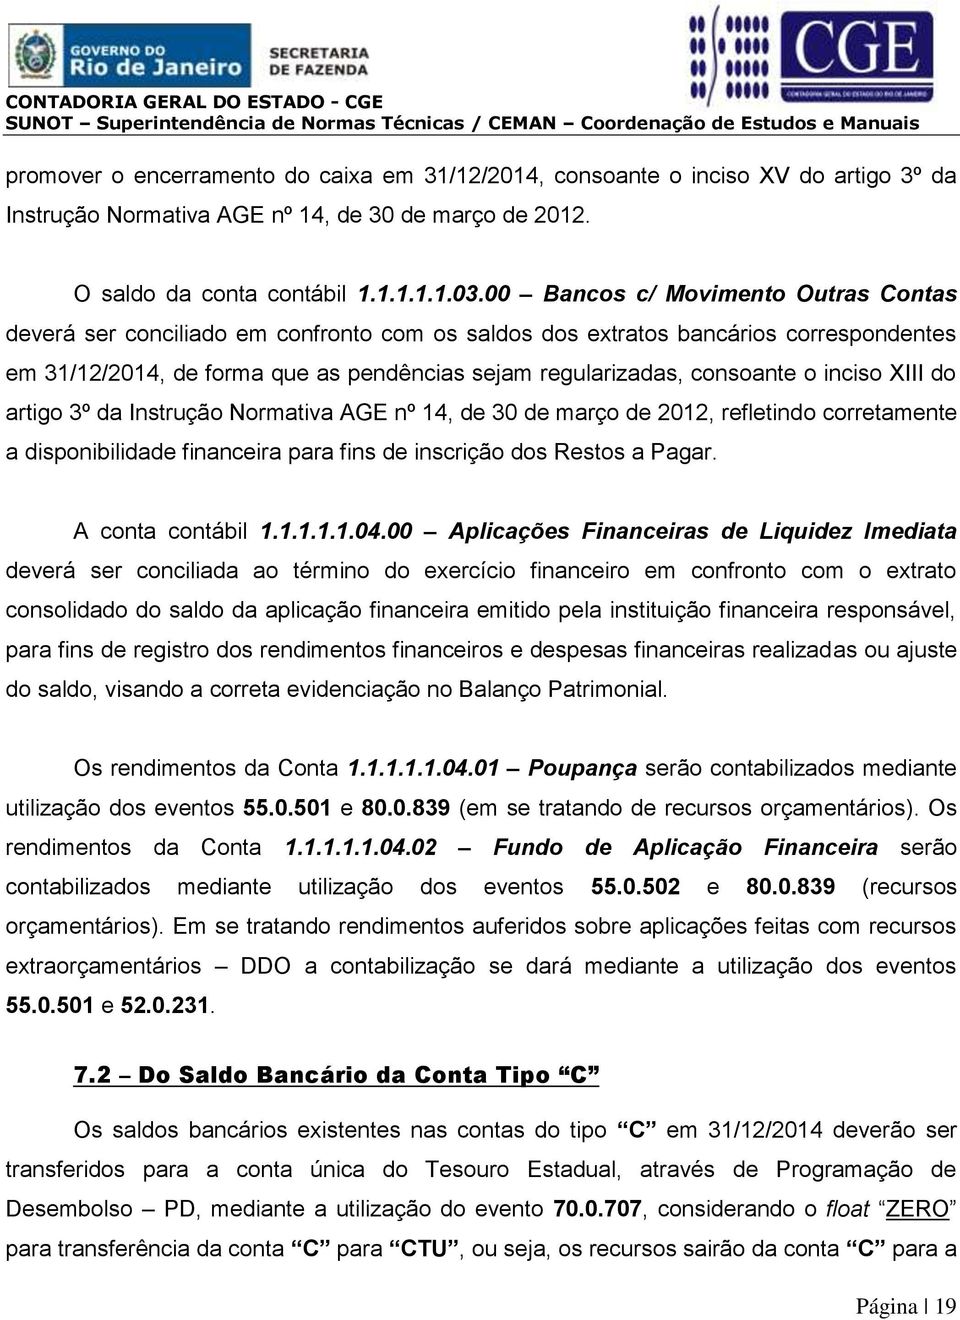 inciso XIII do artigo 3º da Instrução Normativa AGE nº 14, de 30 de março de 2012, refletindo corretamente a disponibilidade financeira para fins de inscrição dos Restos a Pagar. A conta contábil 1.1.1.1.1.04.